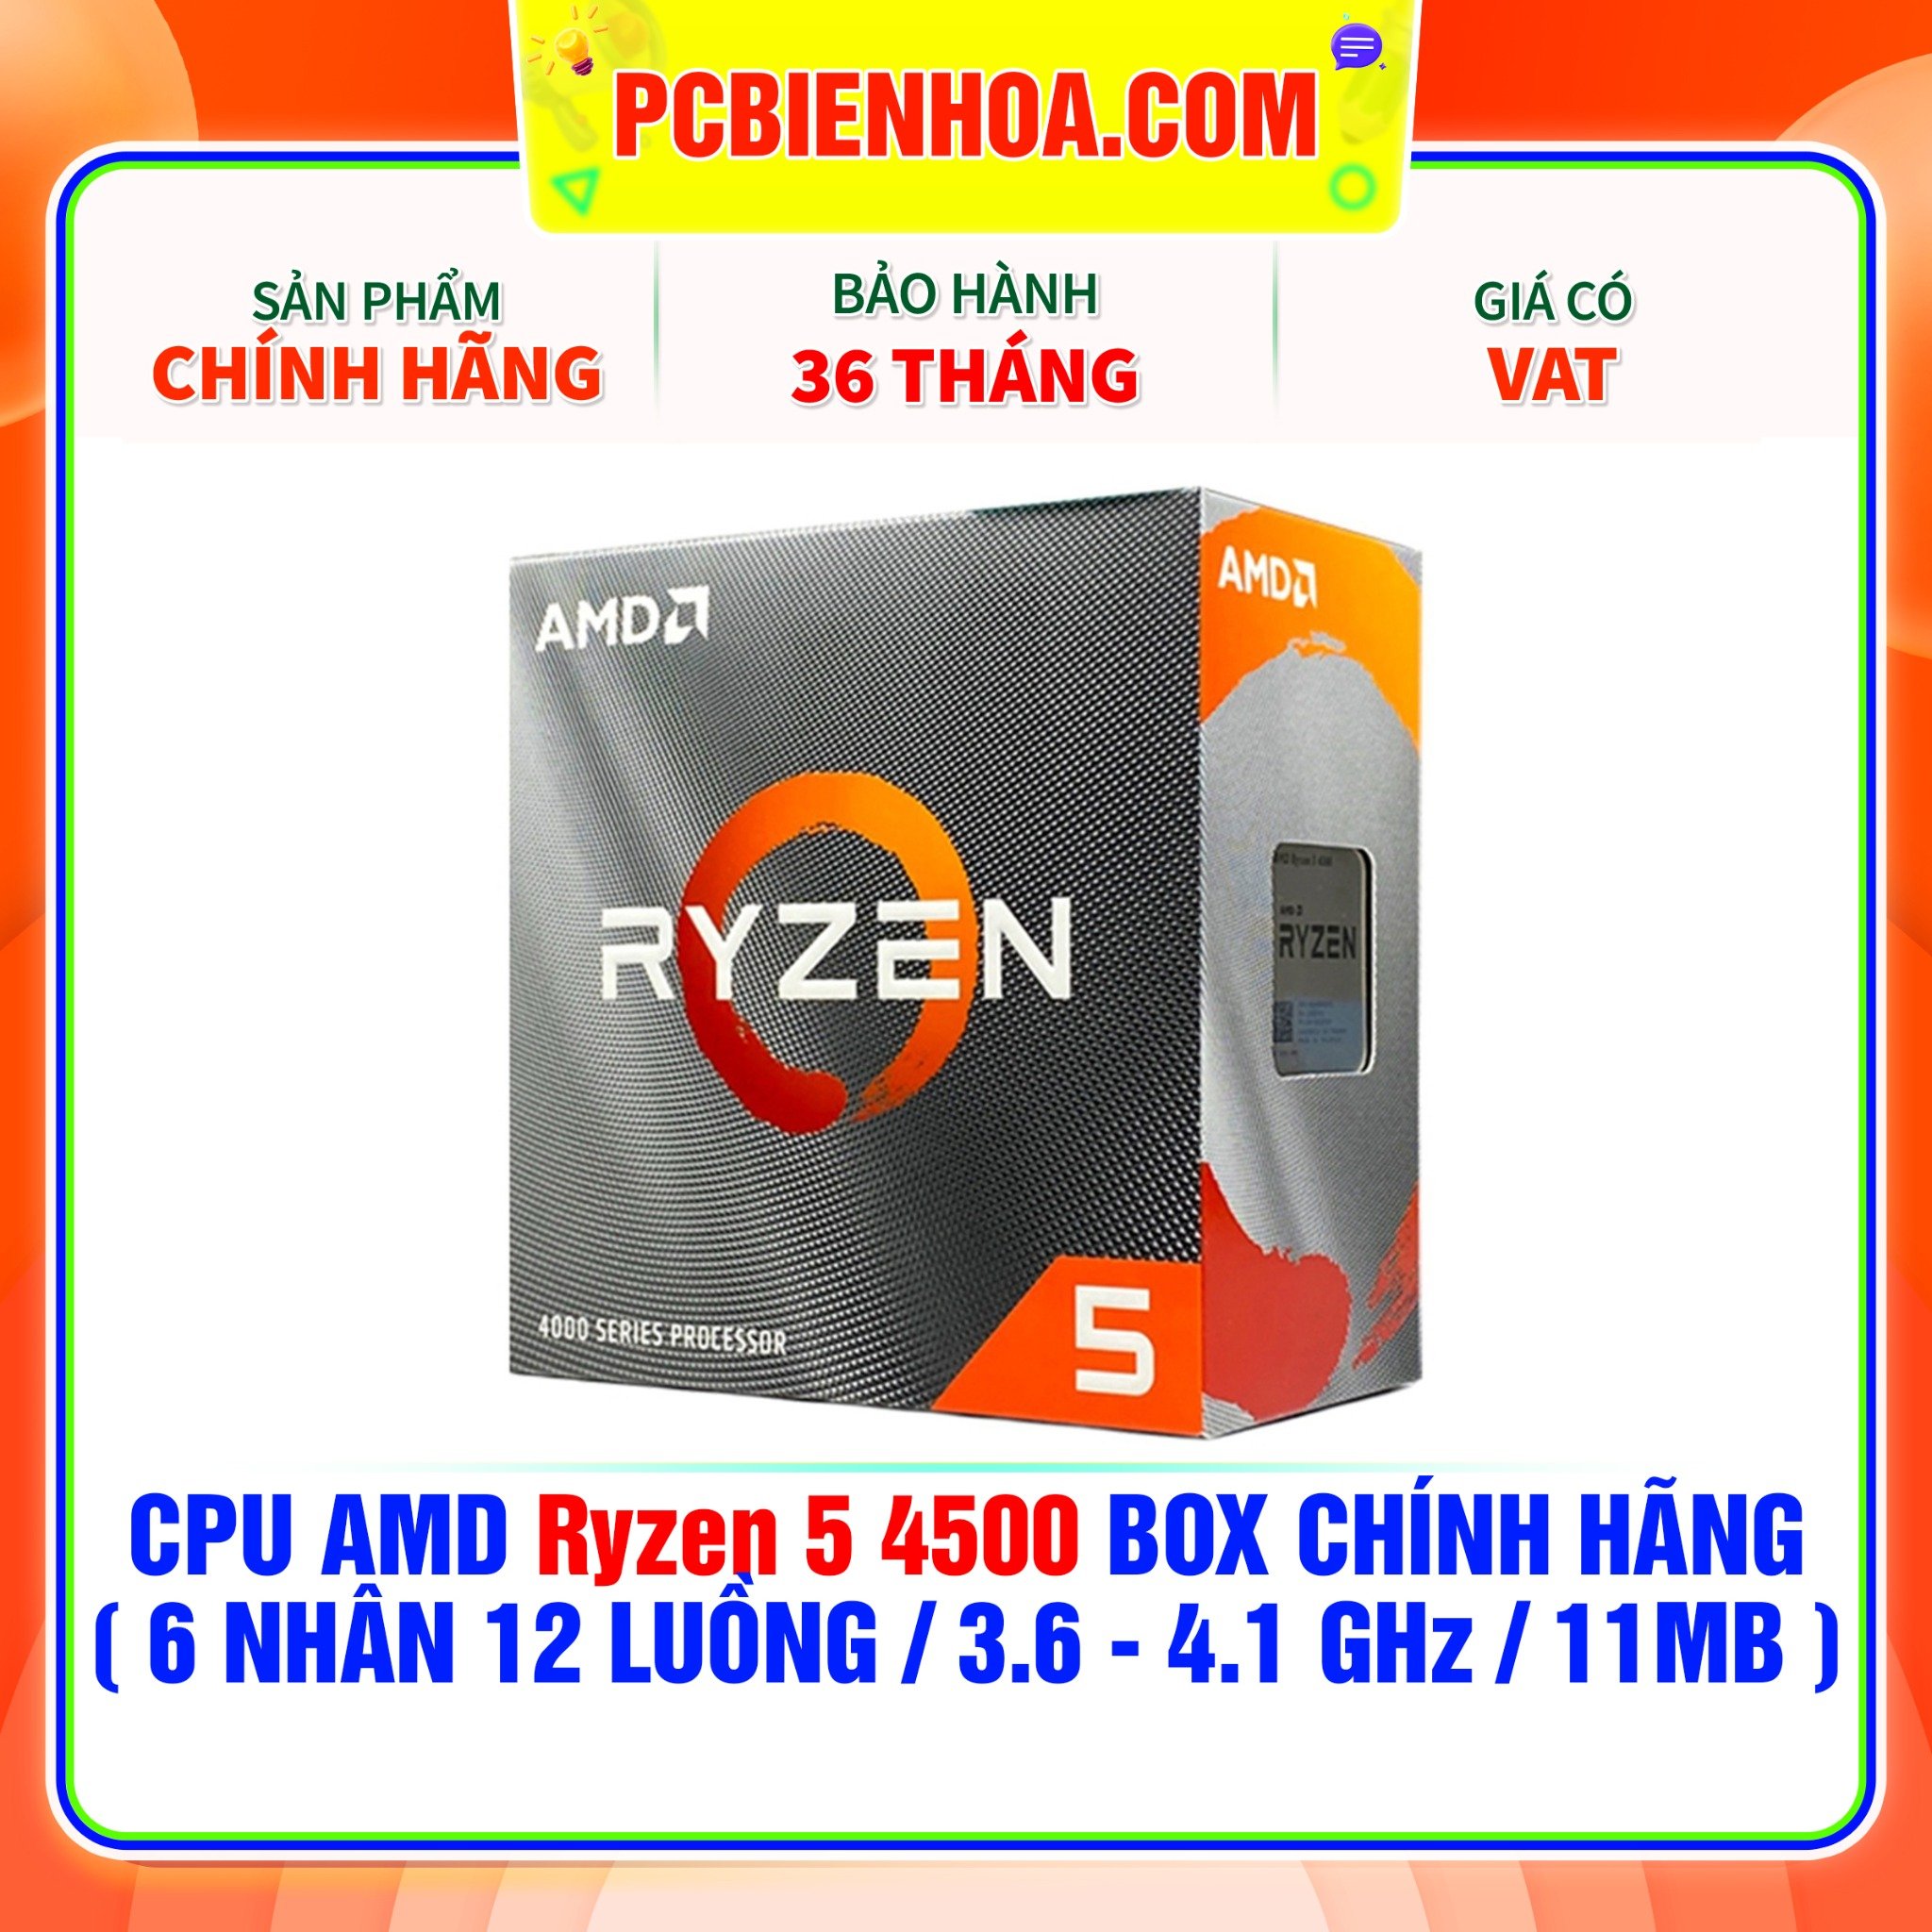 CPU AMD Ryzen 5 4500 CHÍNH HÃNG 6 NHÂN 12 LUỒNG 3.6 - 4.1 GHz 11MB –  PCBIENHOA